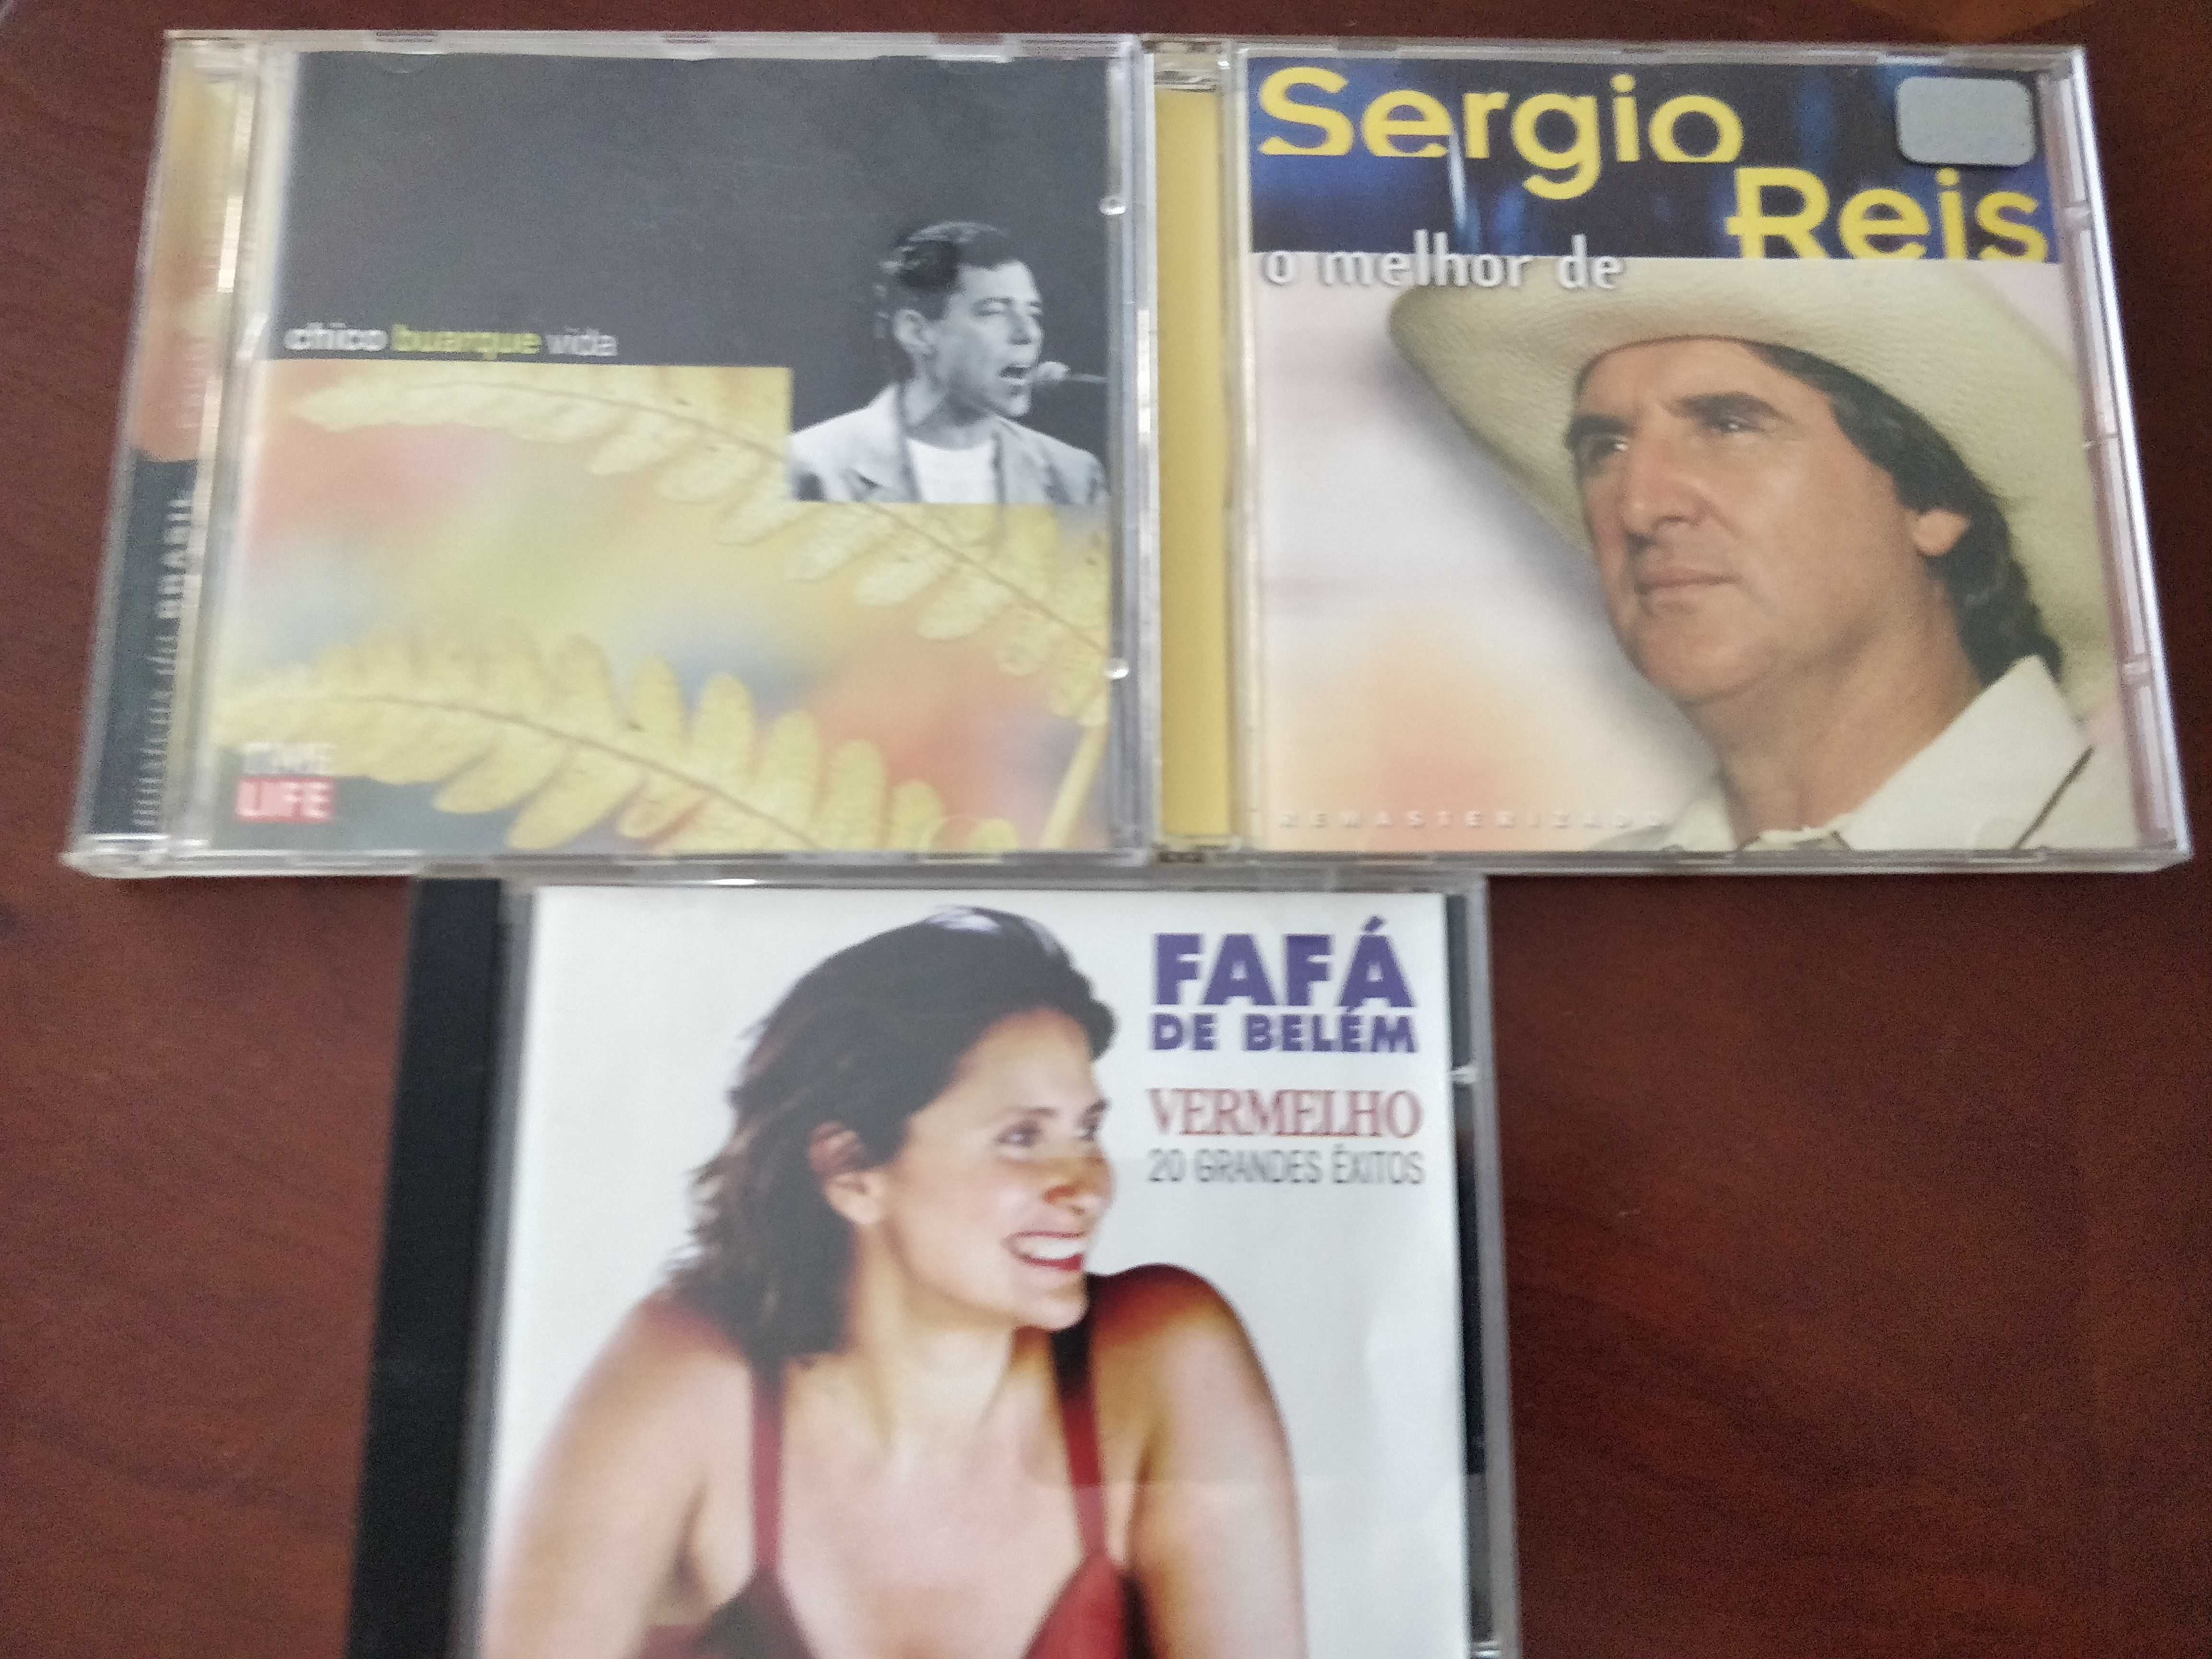 Musica Brasileira / Chico Buarque / Fafa Belém e Sérgio Reis